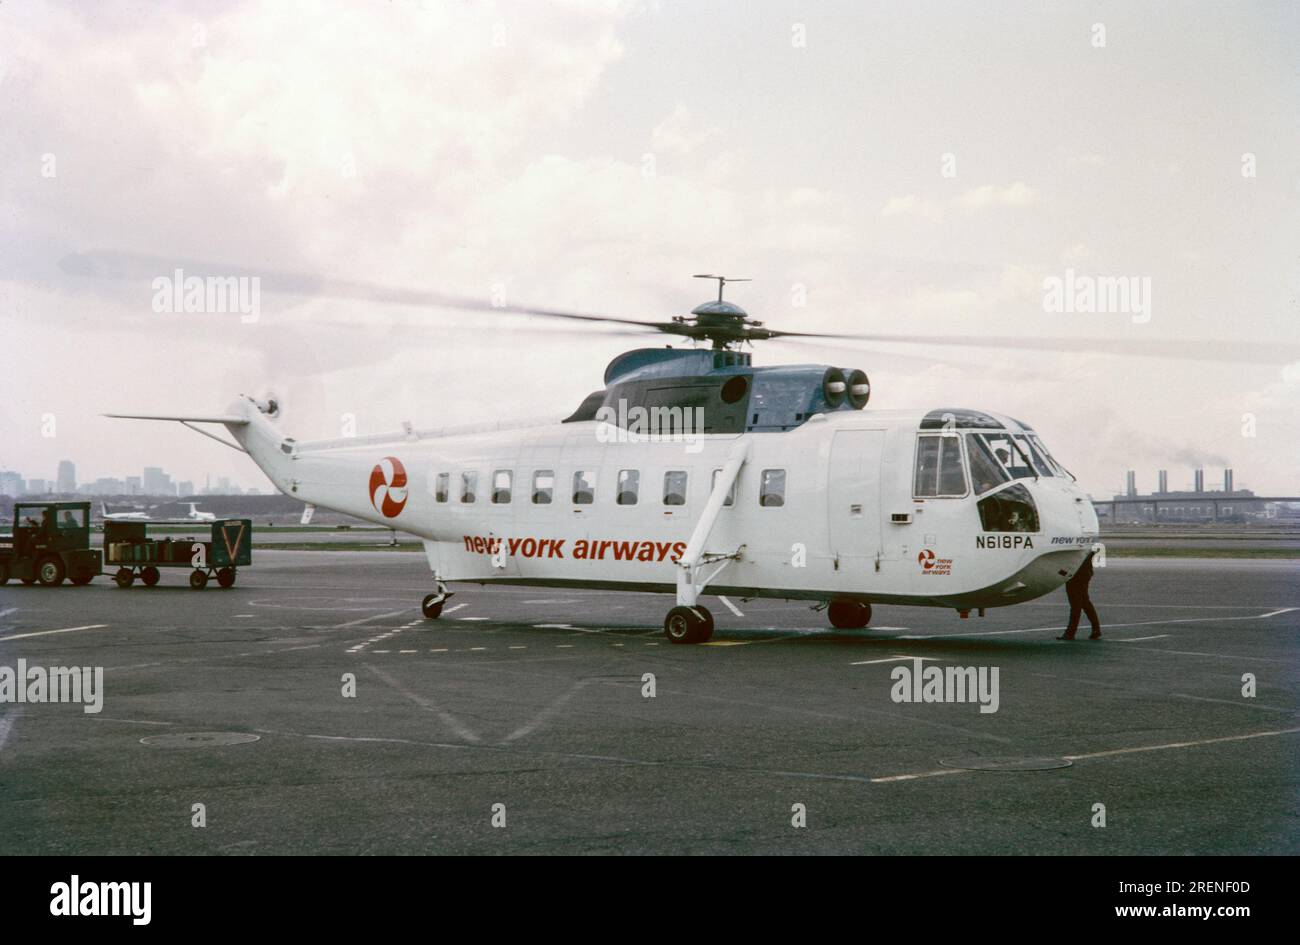 Una fotografia a colori del 1970 di un elicottero della New York Airways Sikorsky S-61, N618PA, in un aeroporto di New York. Questo elicottero si è schiantato il 18 aprile 1979, uccidendo 3 persone a bordo. Foto Stock